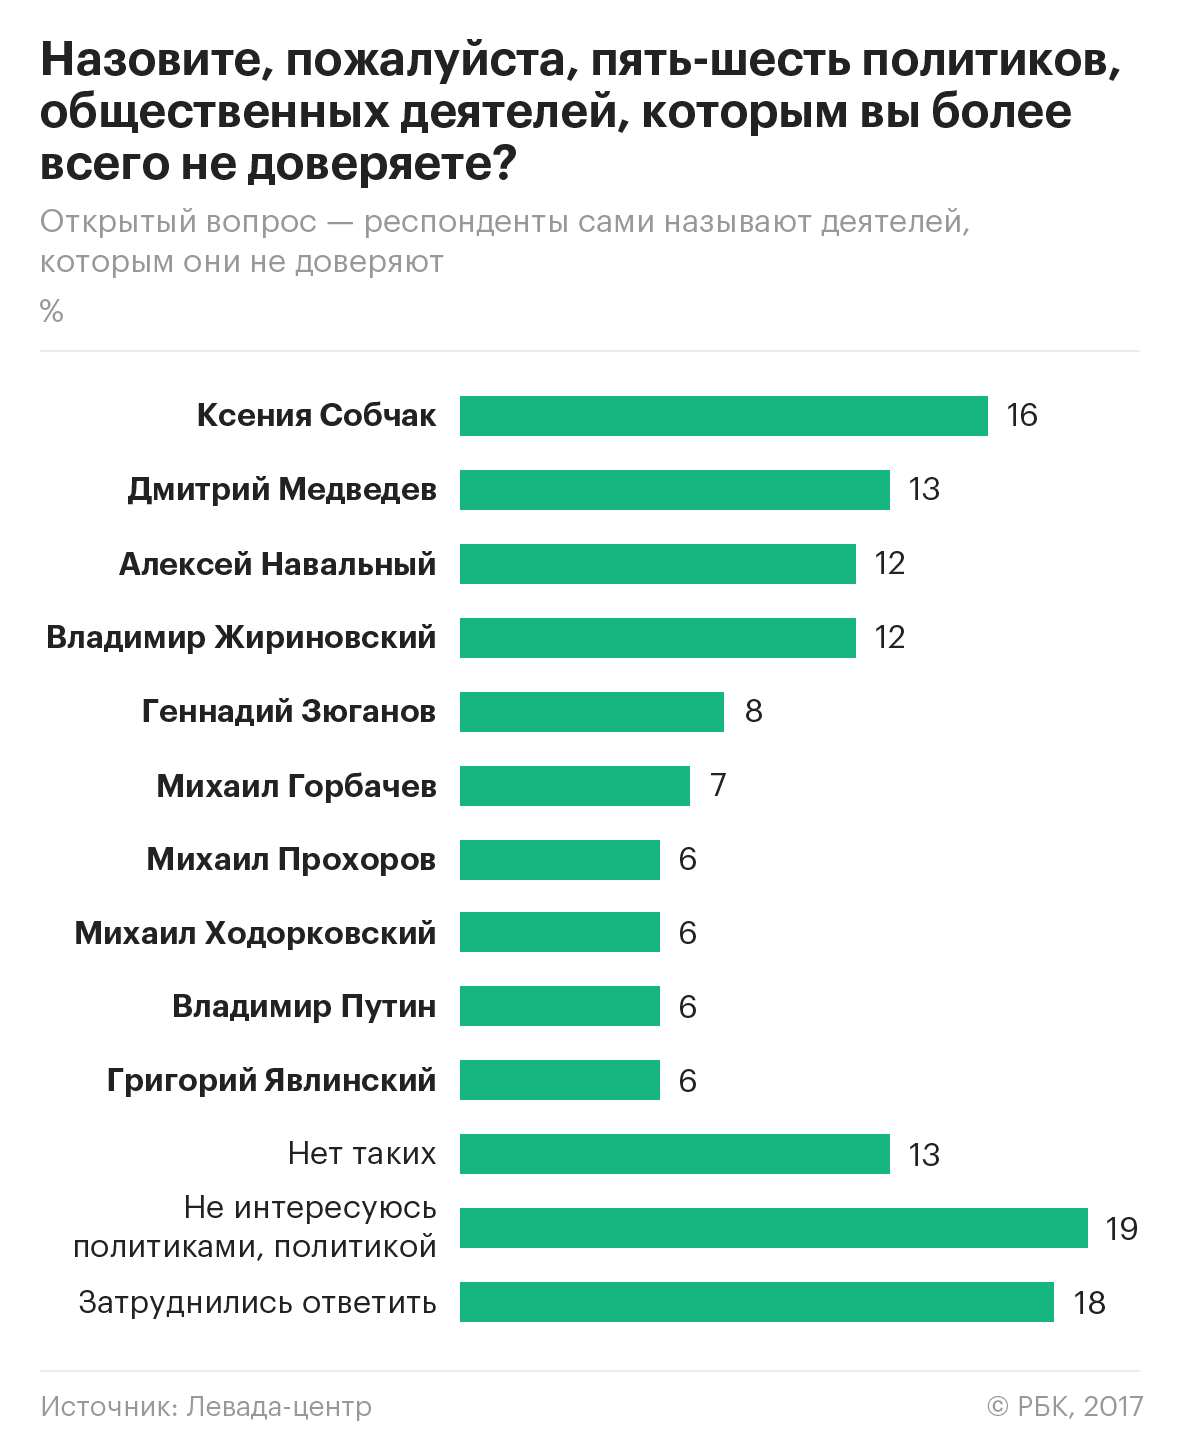 Собчак лишила Медведева лидерства в рейтинге недоверия